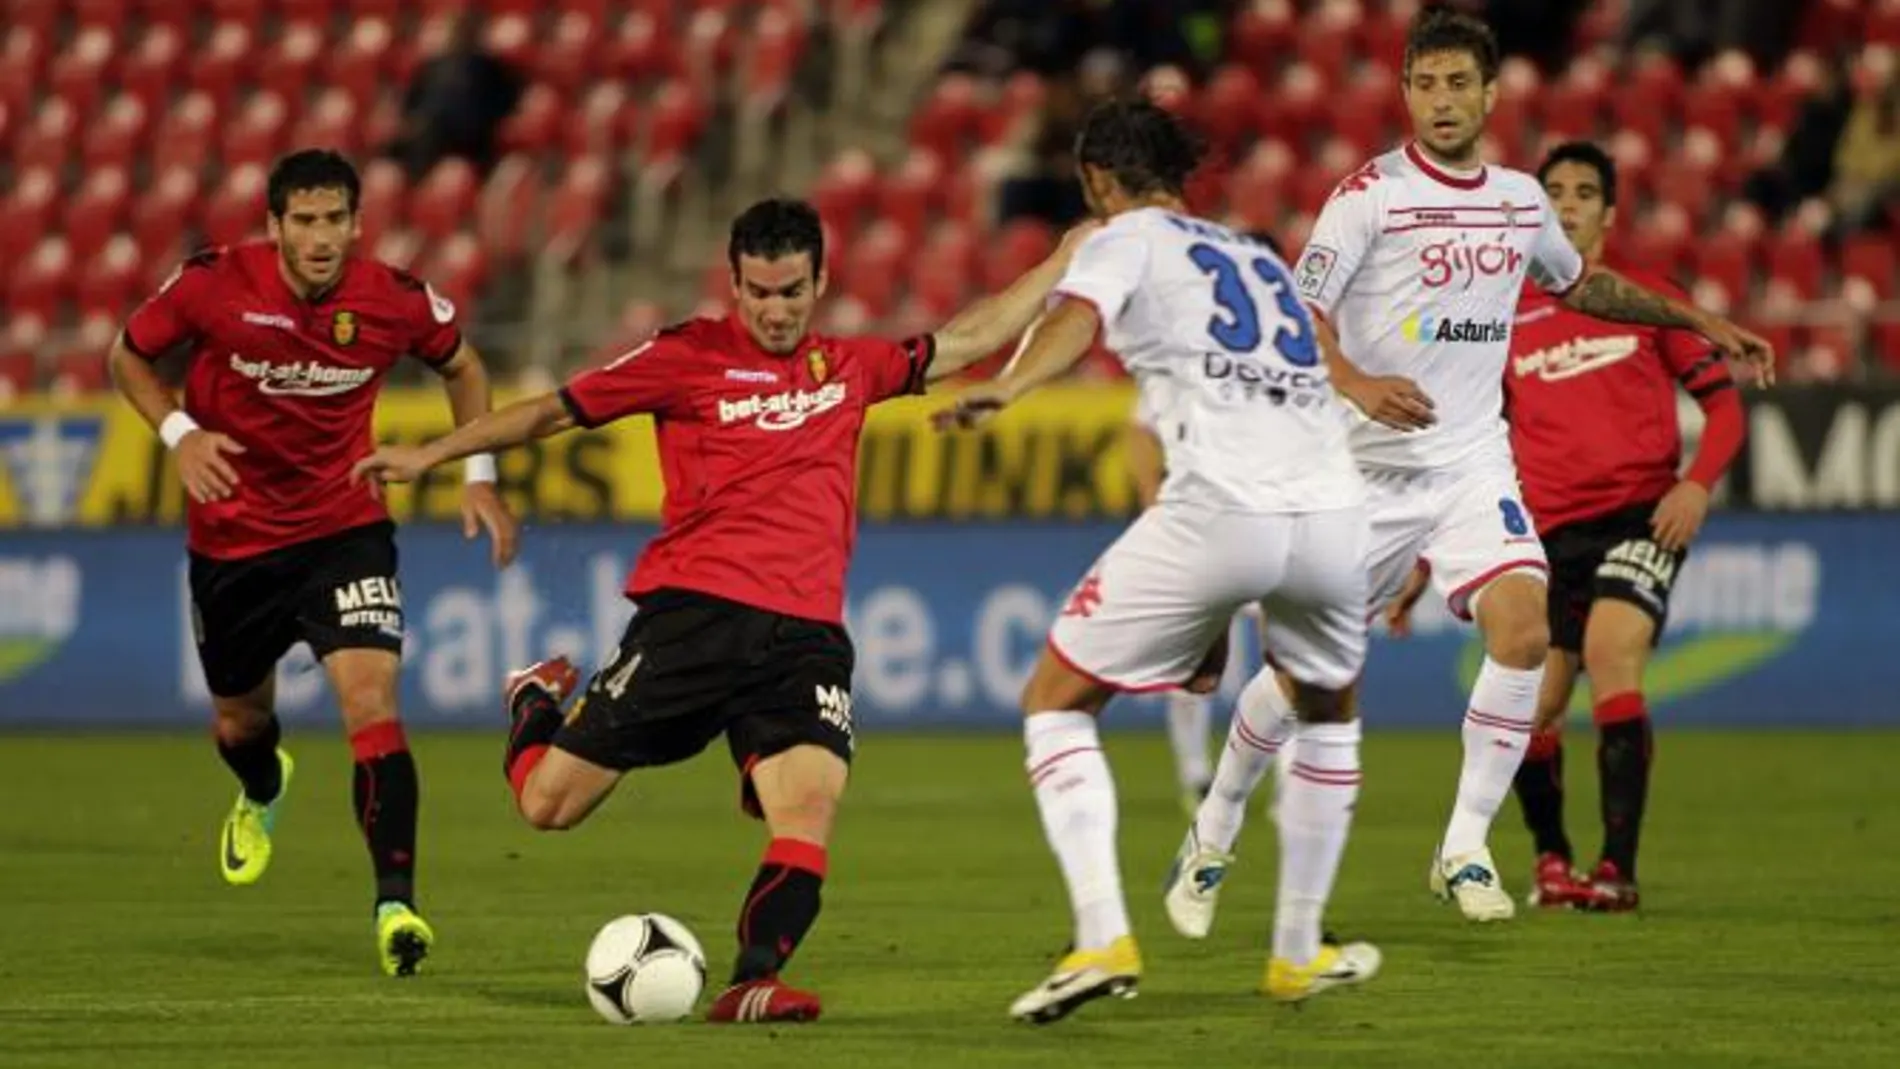 El delantero del RCD Mallorca, Alejandro Alfaro (2i), golpeal el balón ante el defensor del Sporting de Gijón